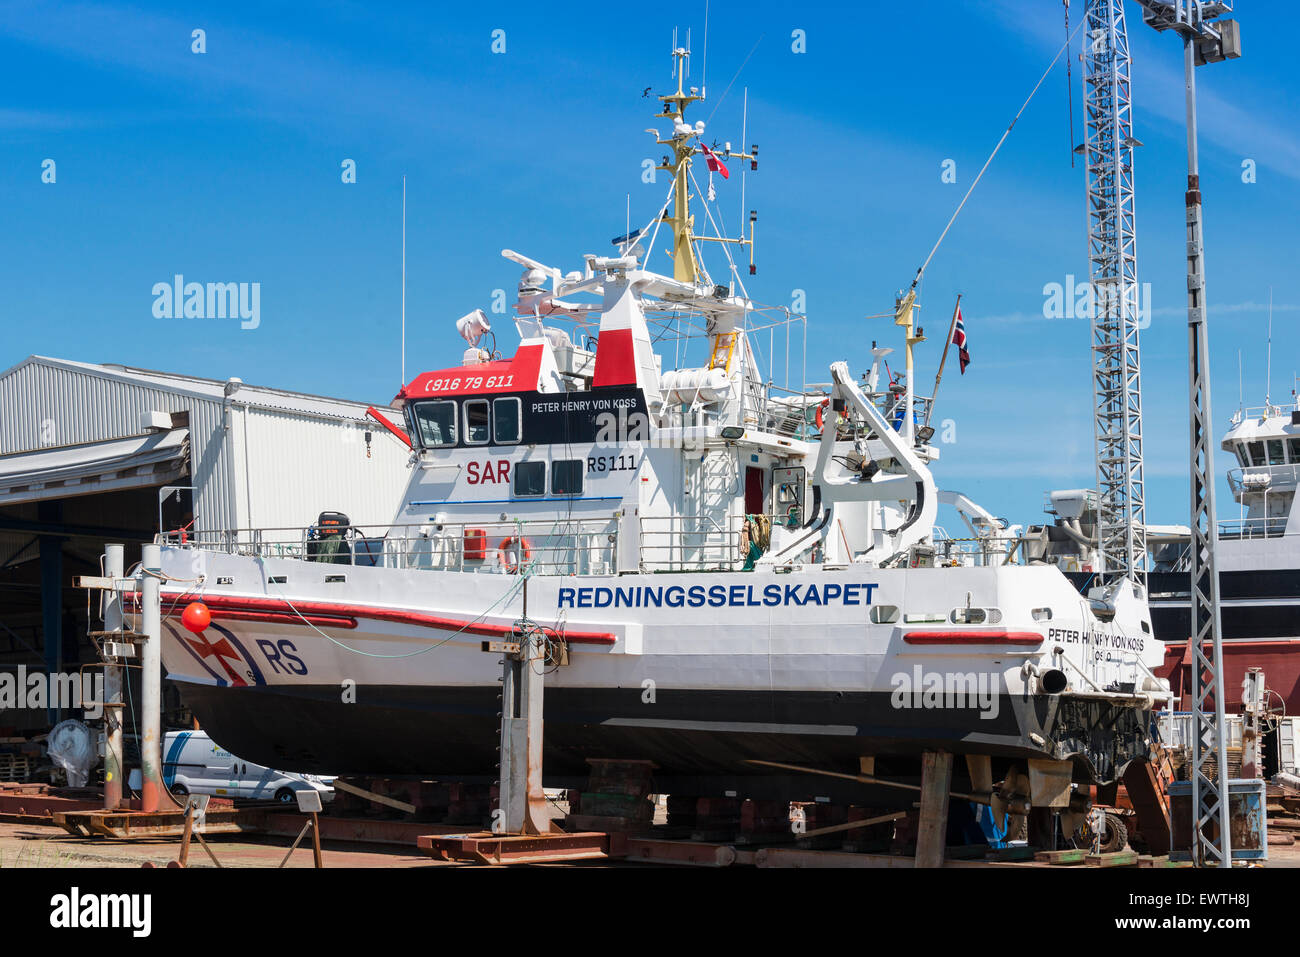 Severn-classe barca salvavita in bacino di carenaggio, Skagen, regione dello Jutland settentrionale, Danimarca Foto Stock